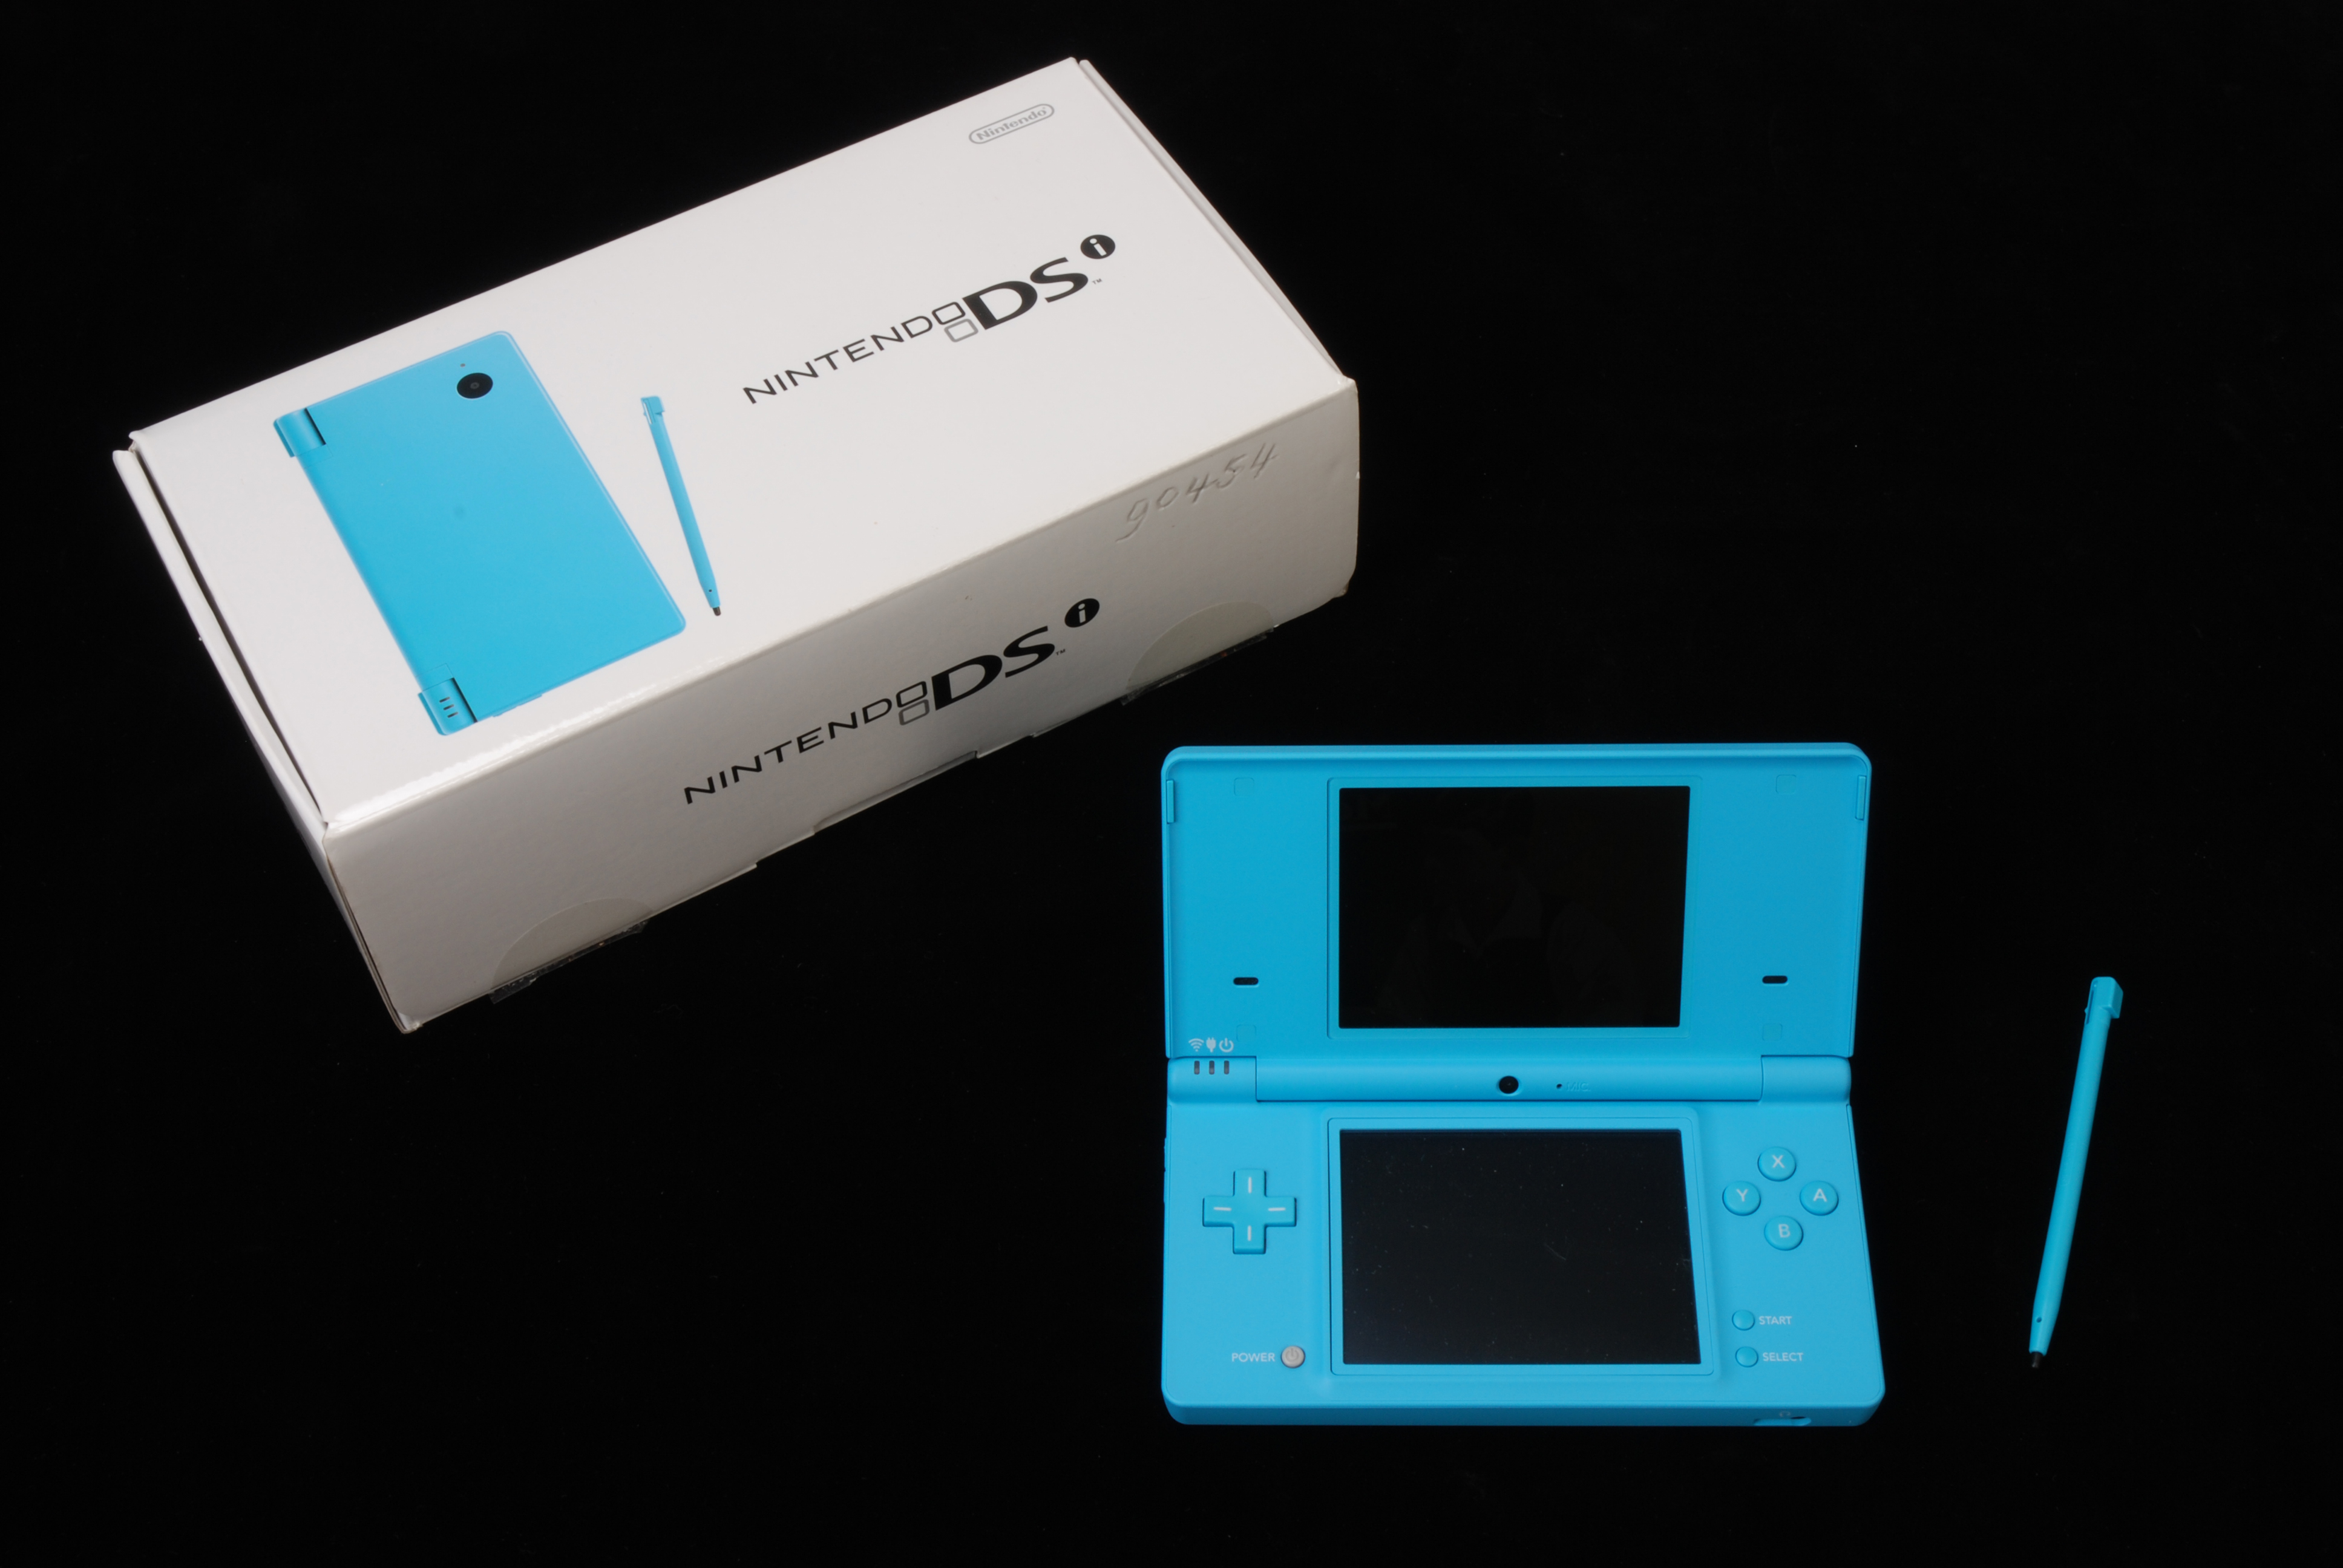 File:Blauwe Nintendo DSi, in originele doos, objectnr 90454.JPG - Wikimedia Commons